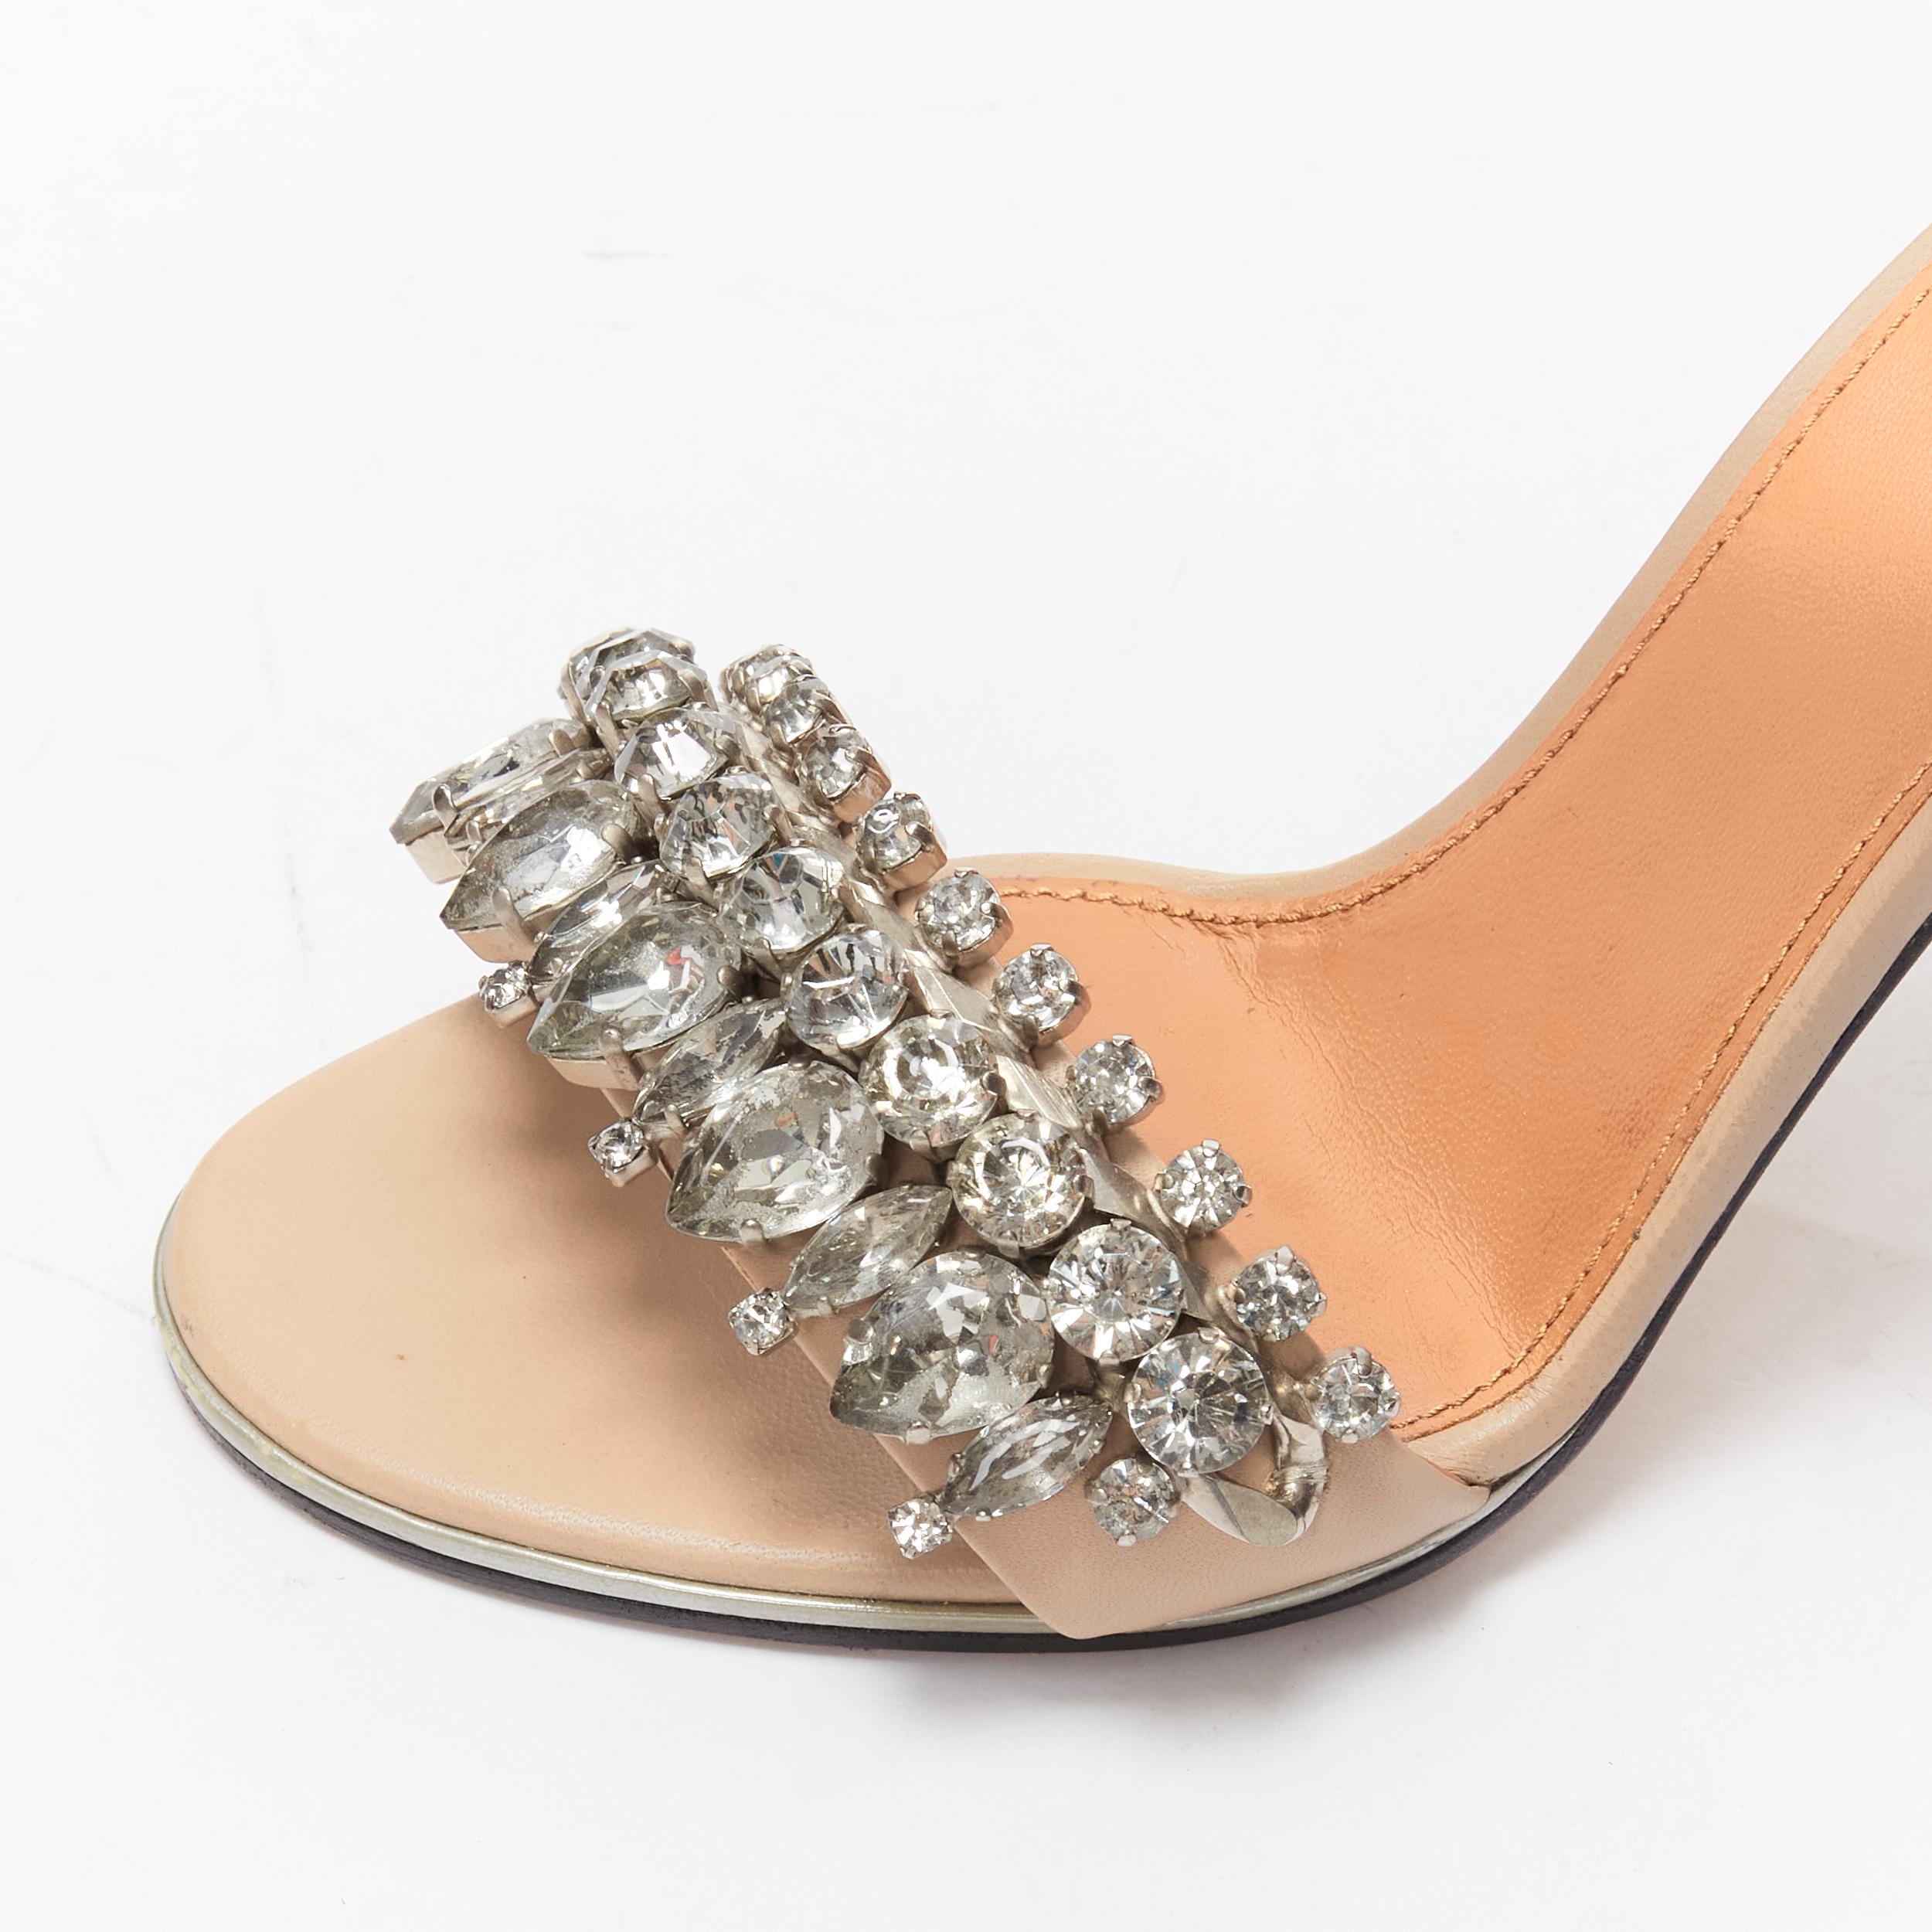 GIVENCHY Riccardo Tisci crystal embellished ankle strap high heel sandals EU37 For Sale 2